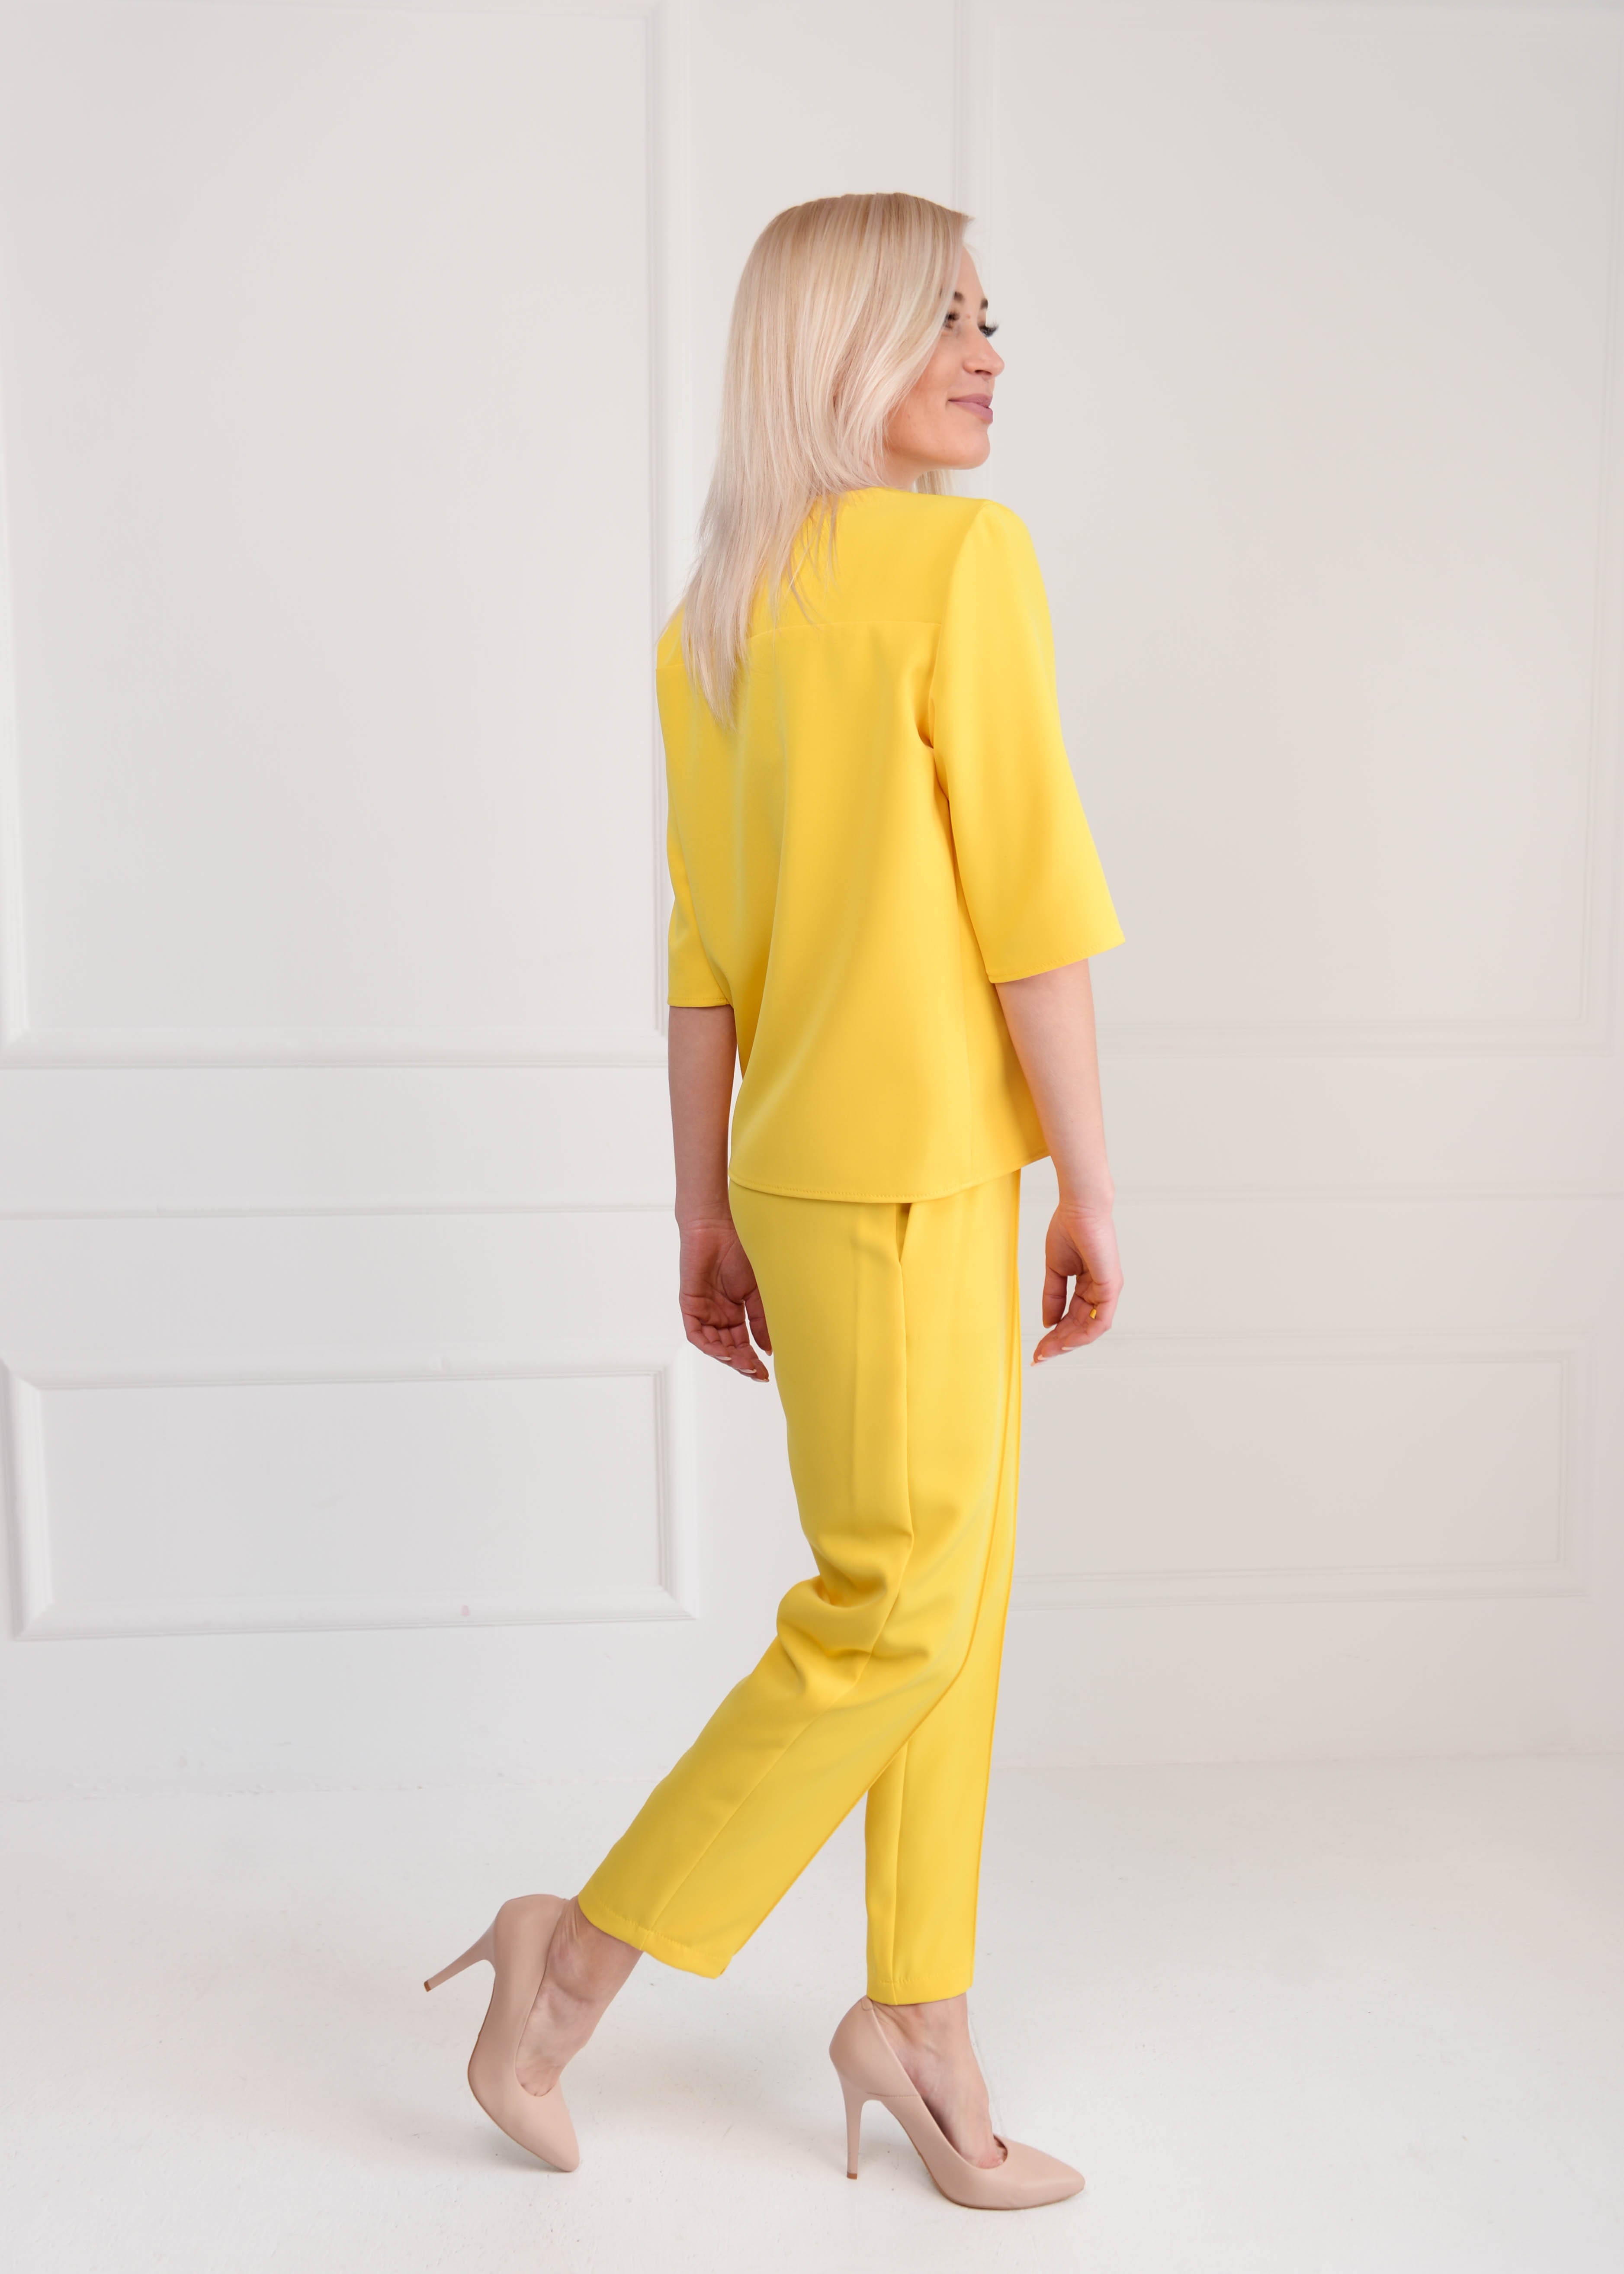 Костюм женский с брюками желтый 02607 цена